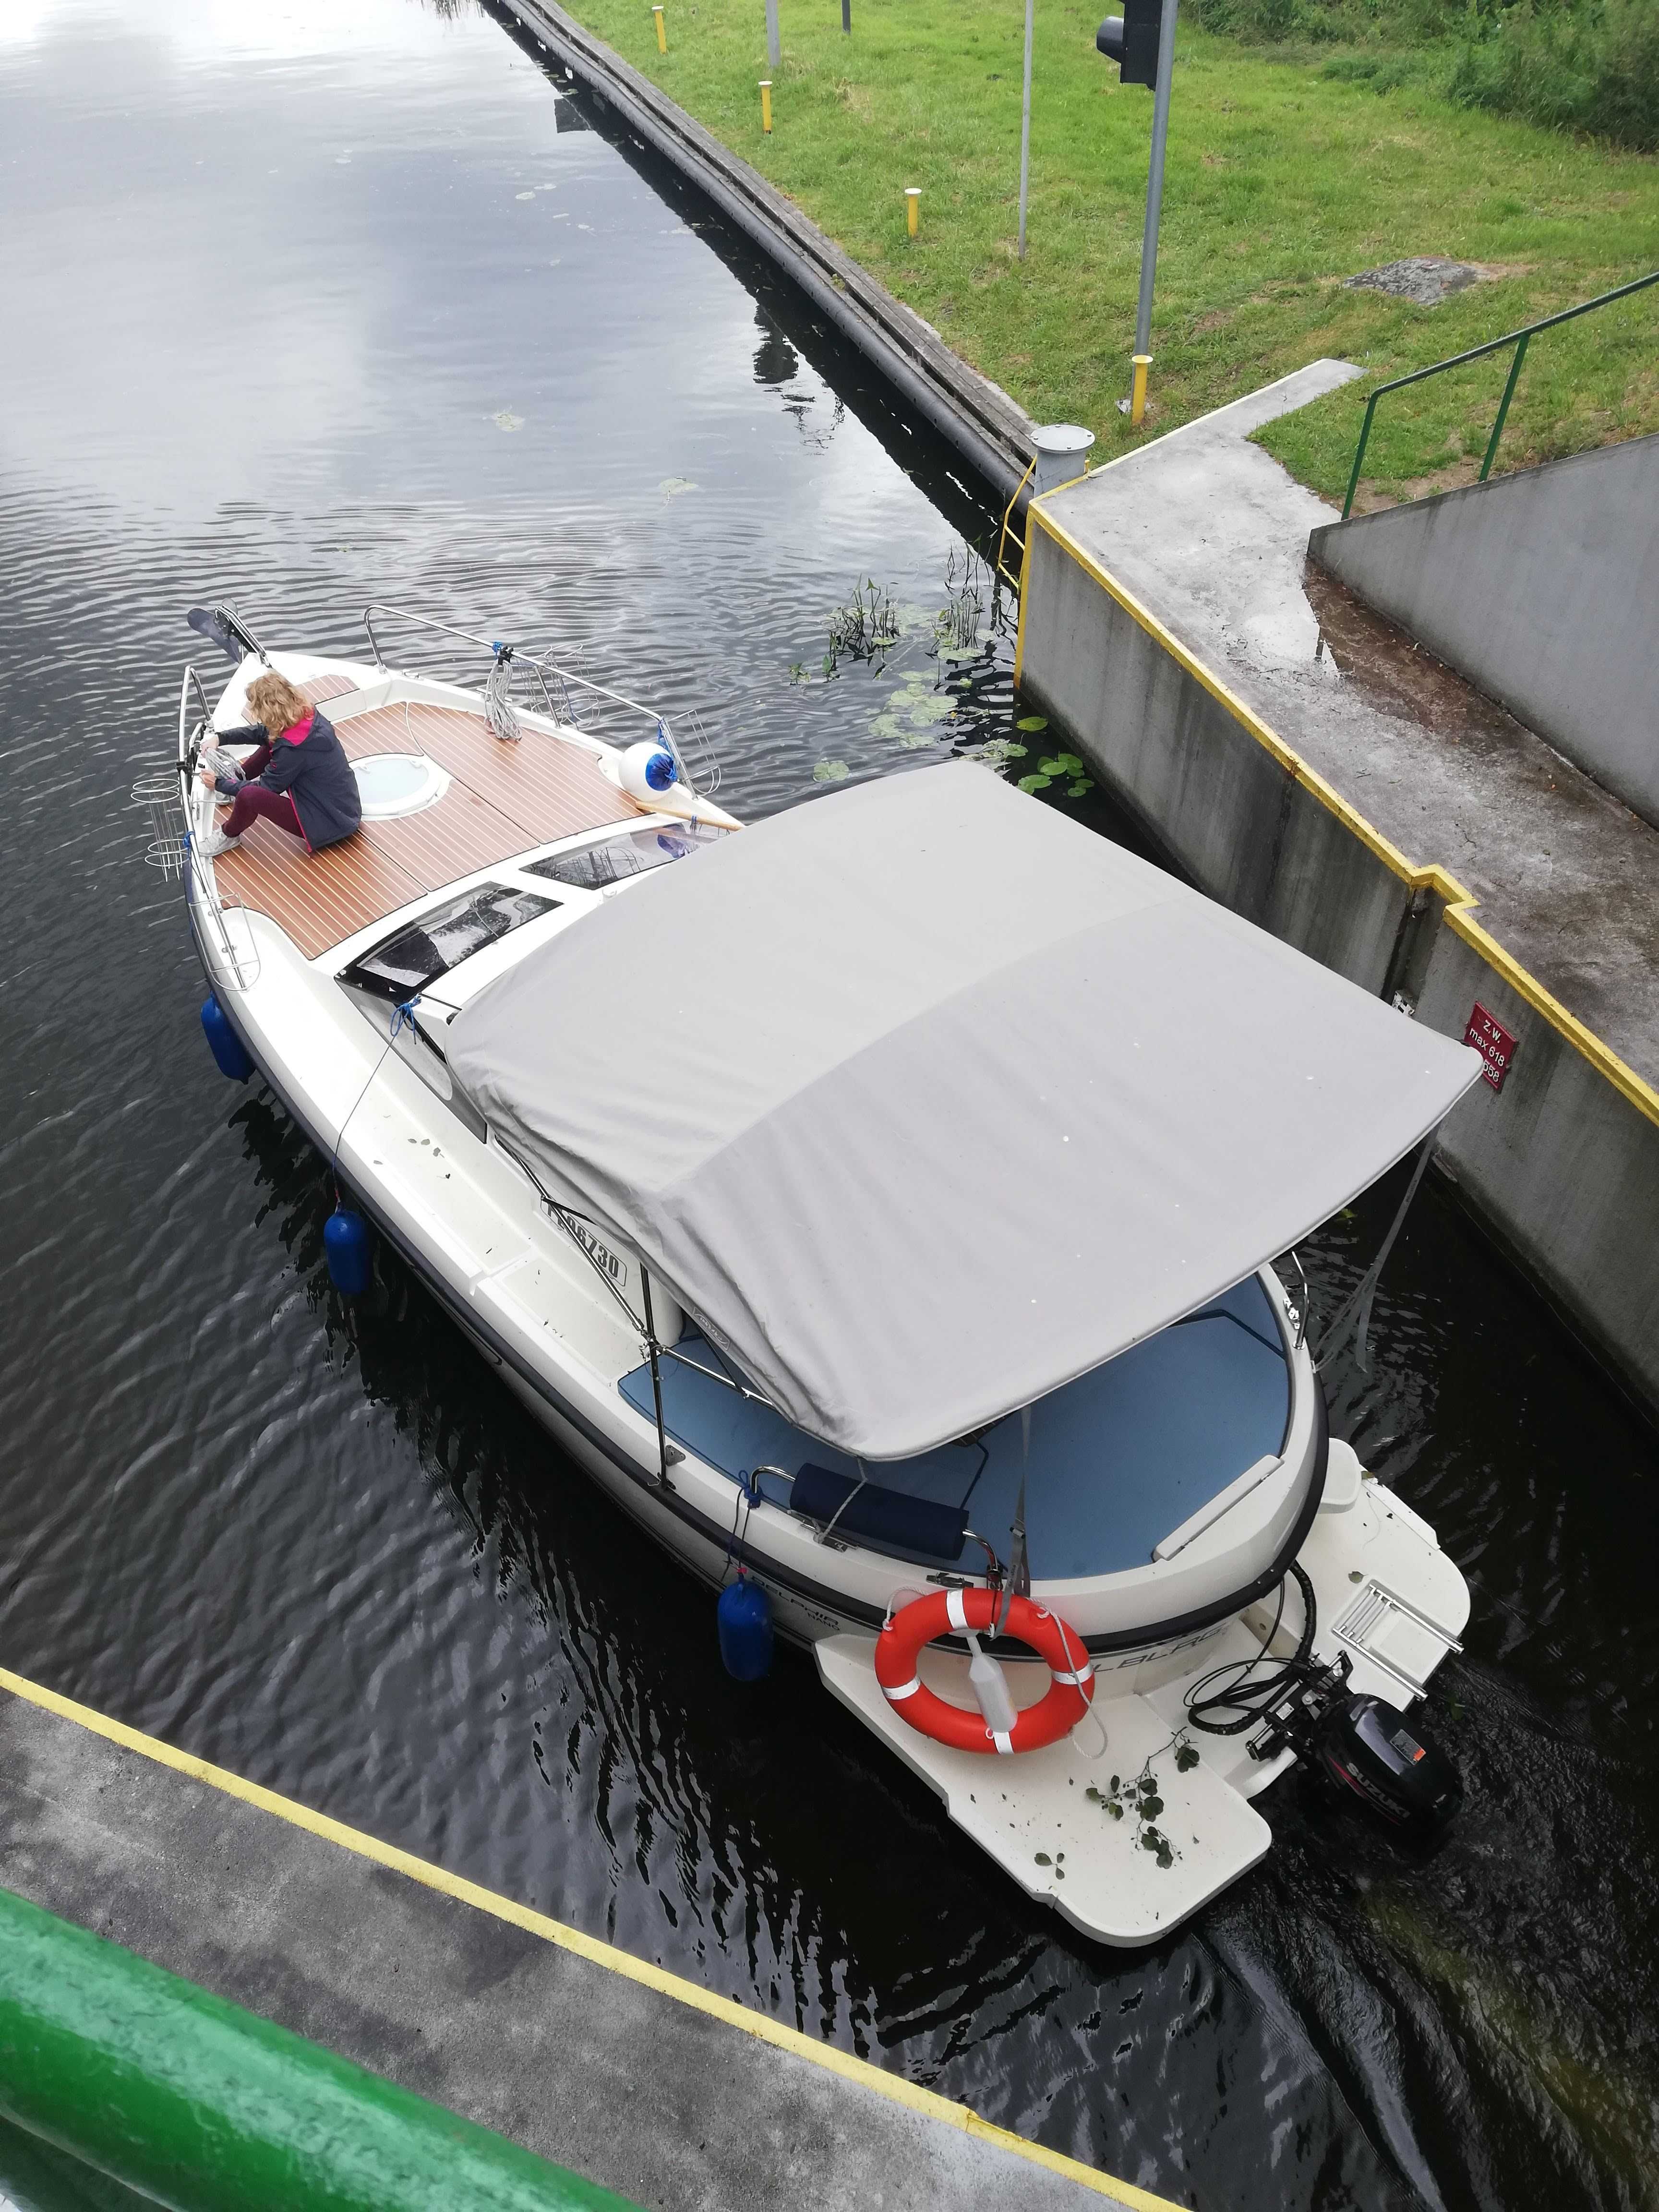 Sprzedam Jacht motorowy Delphia Nano hausboat w oryginale, wyposażony